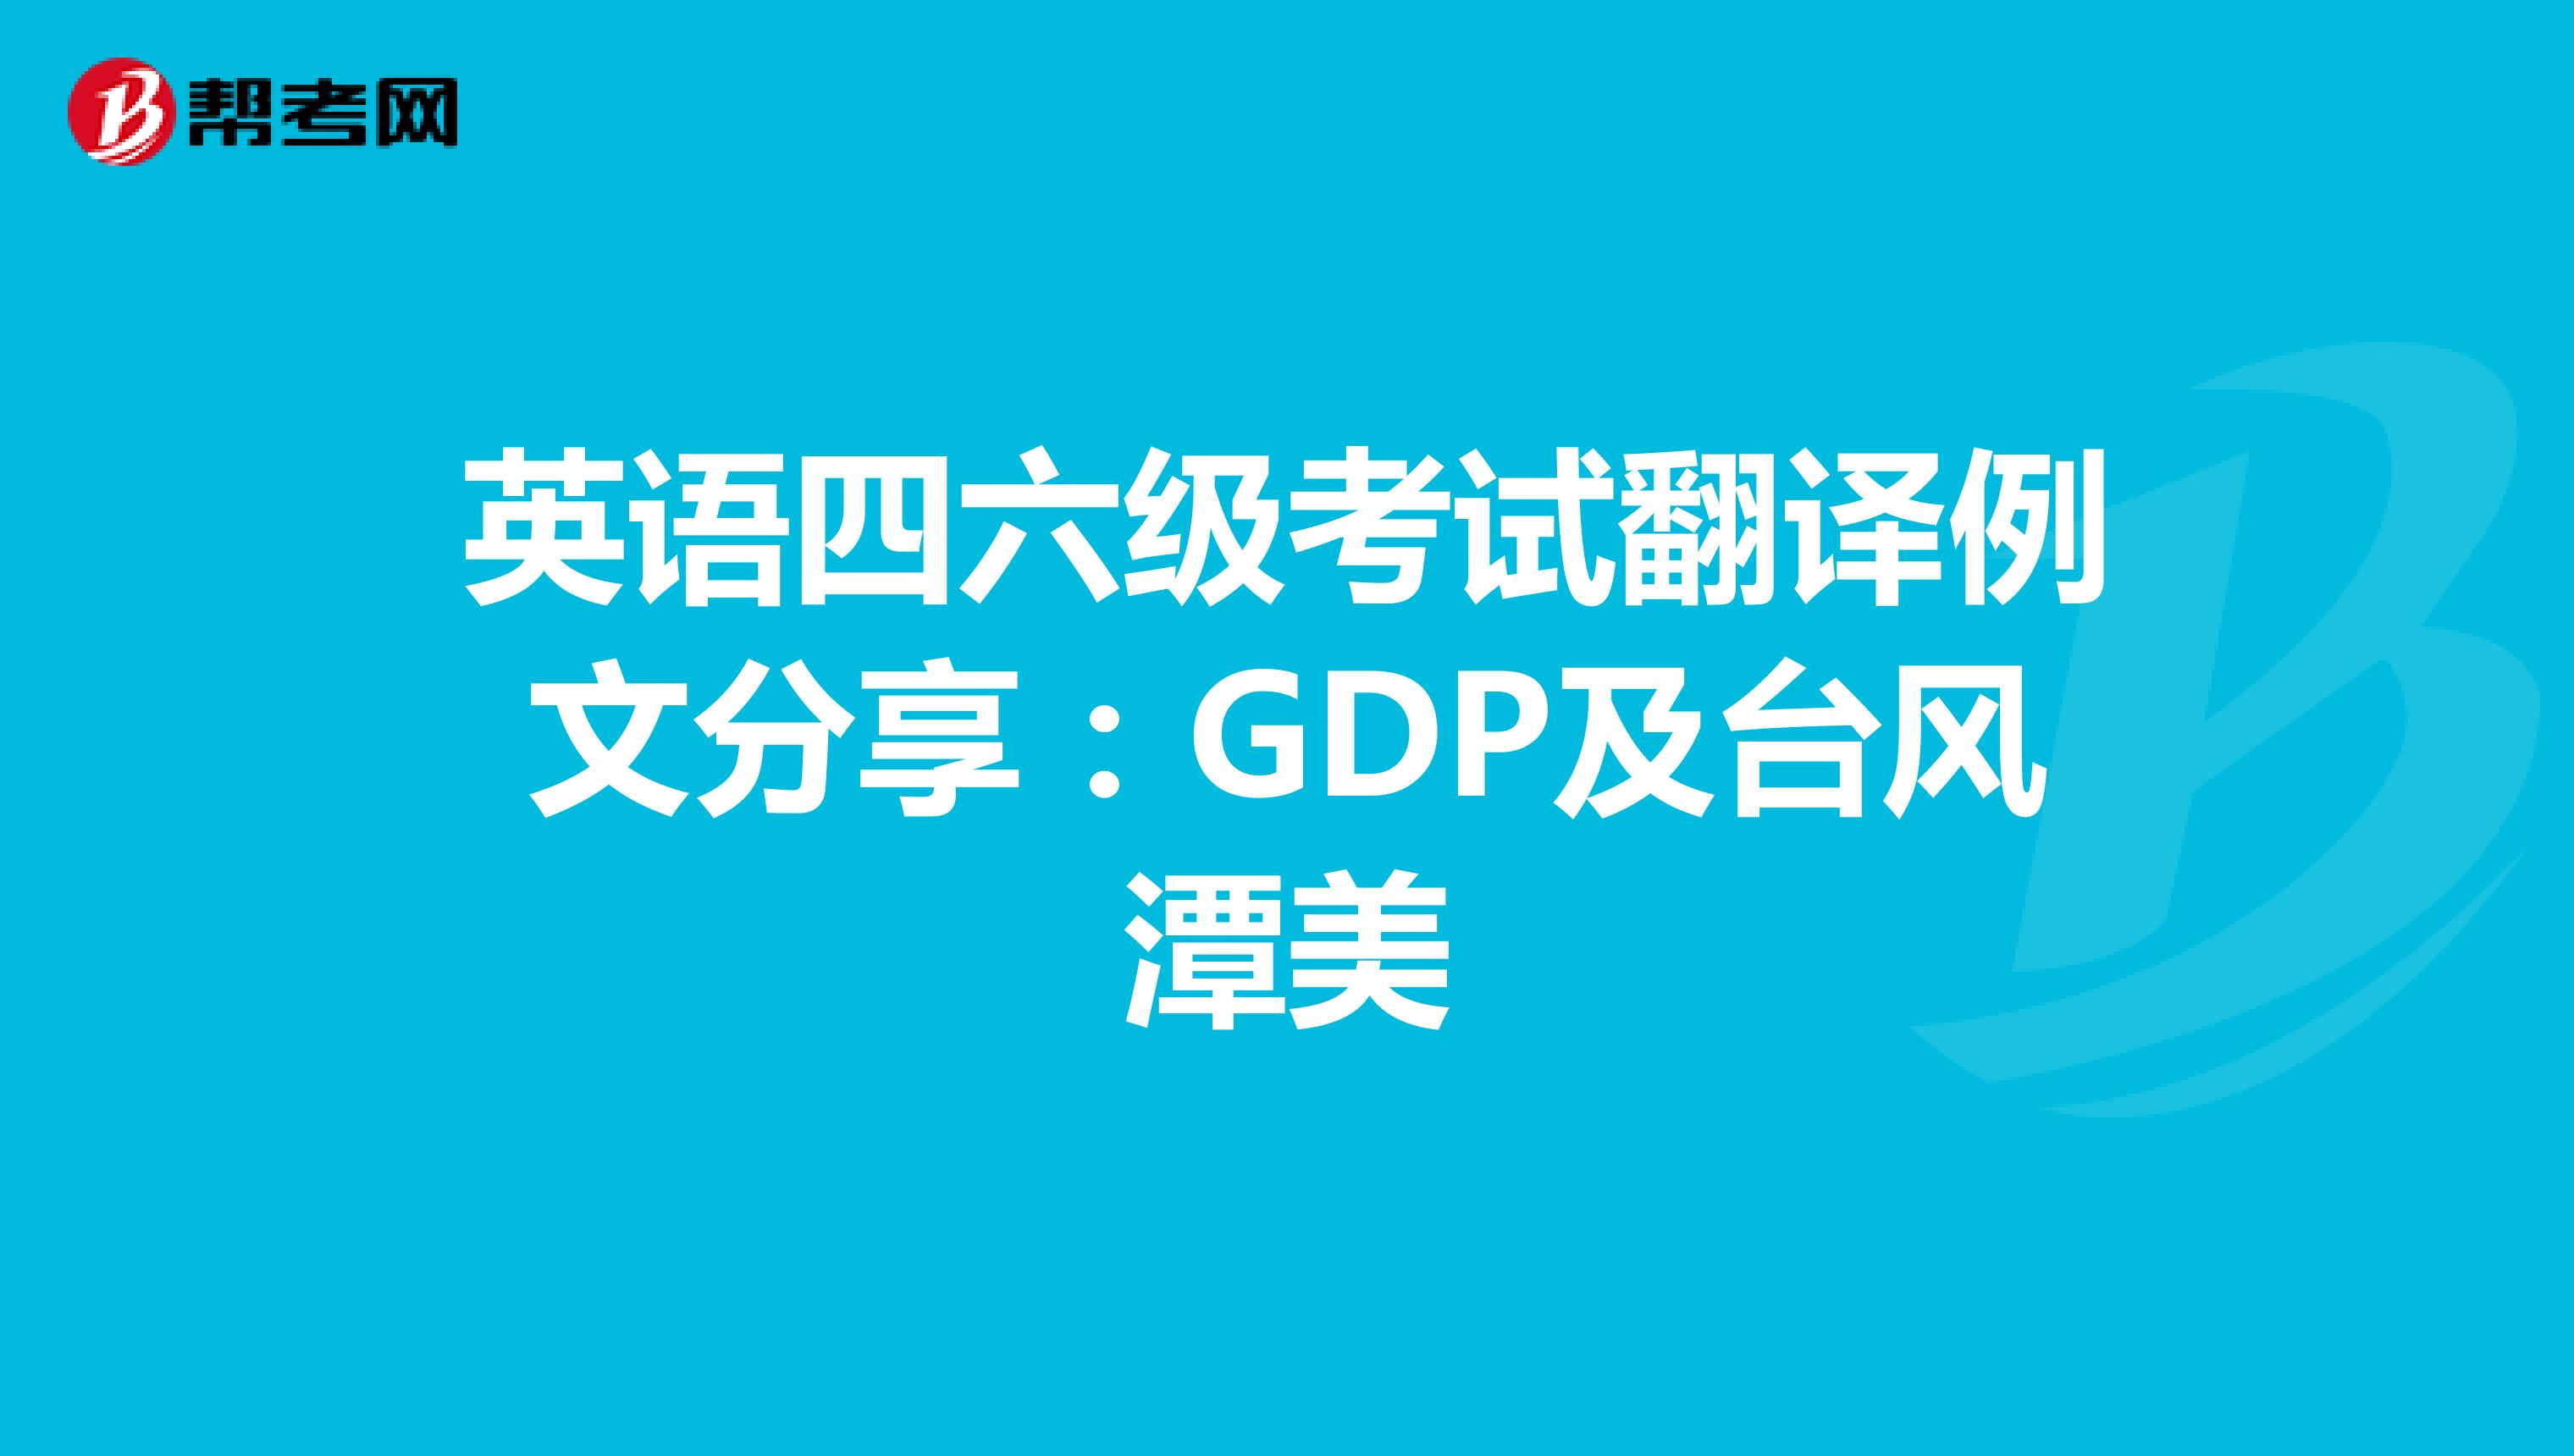 英语四六级考试翻译例文分享：GDP及台风潭美